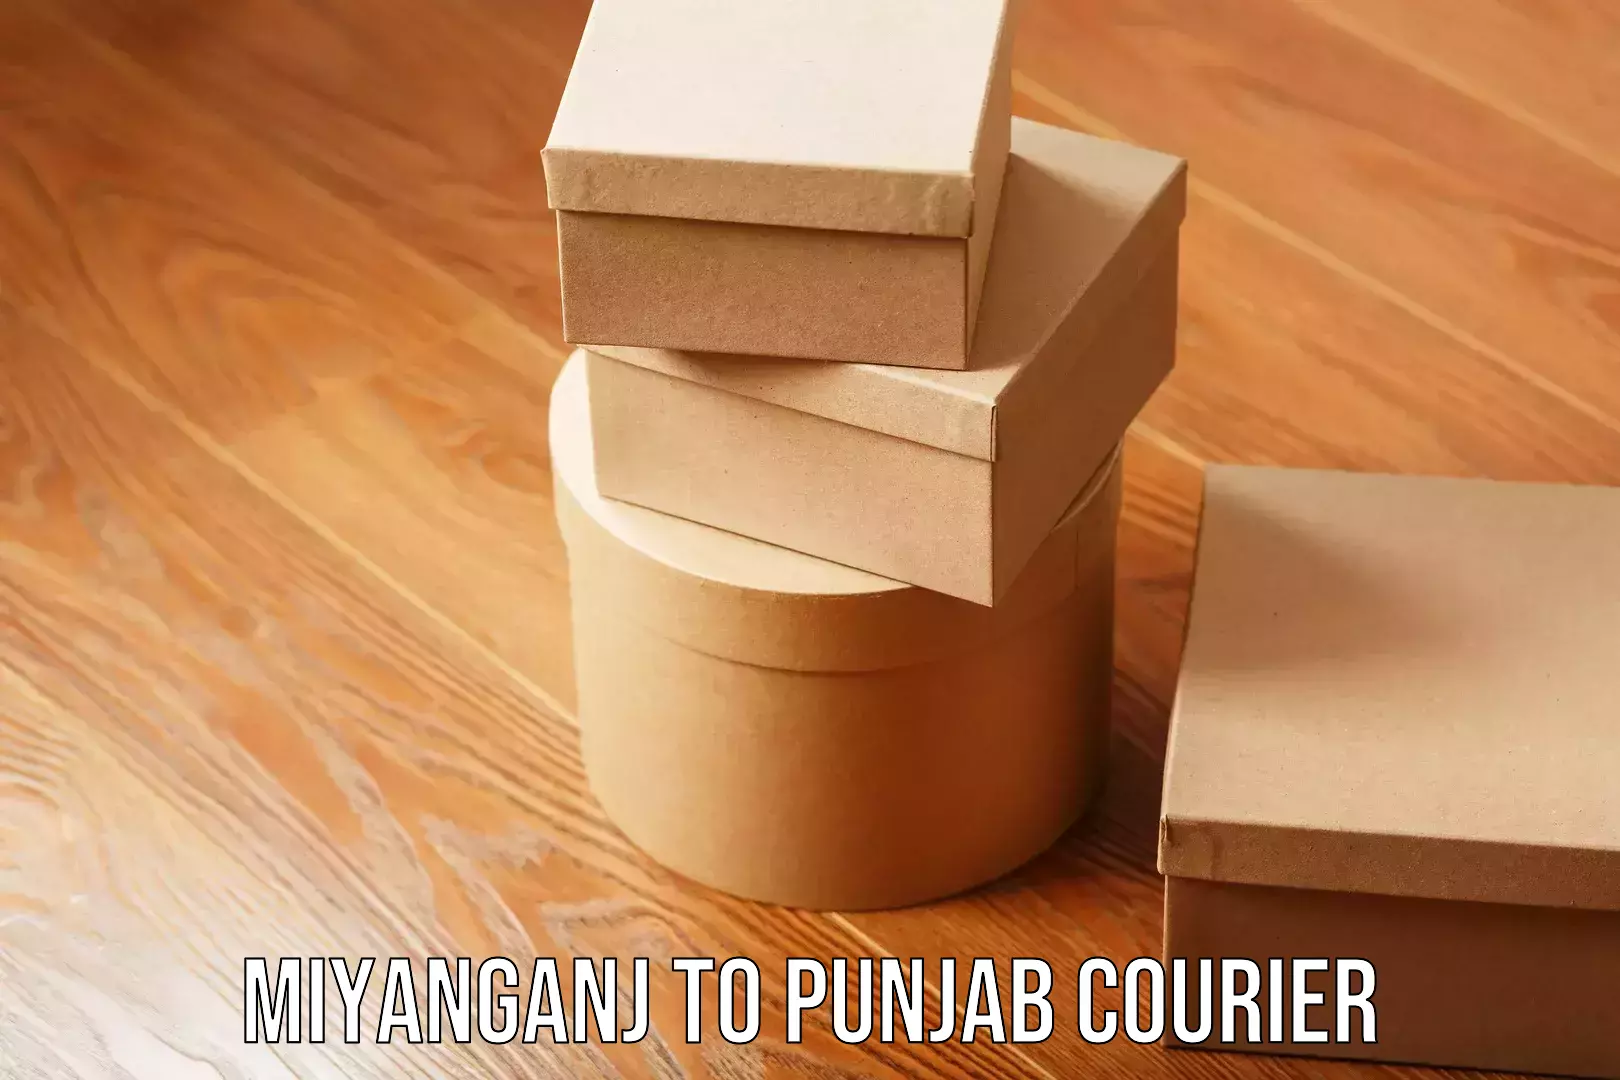 Home goods moving company Miyanganj to Punjab